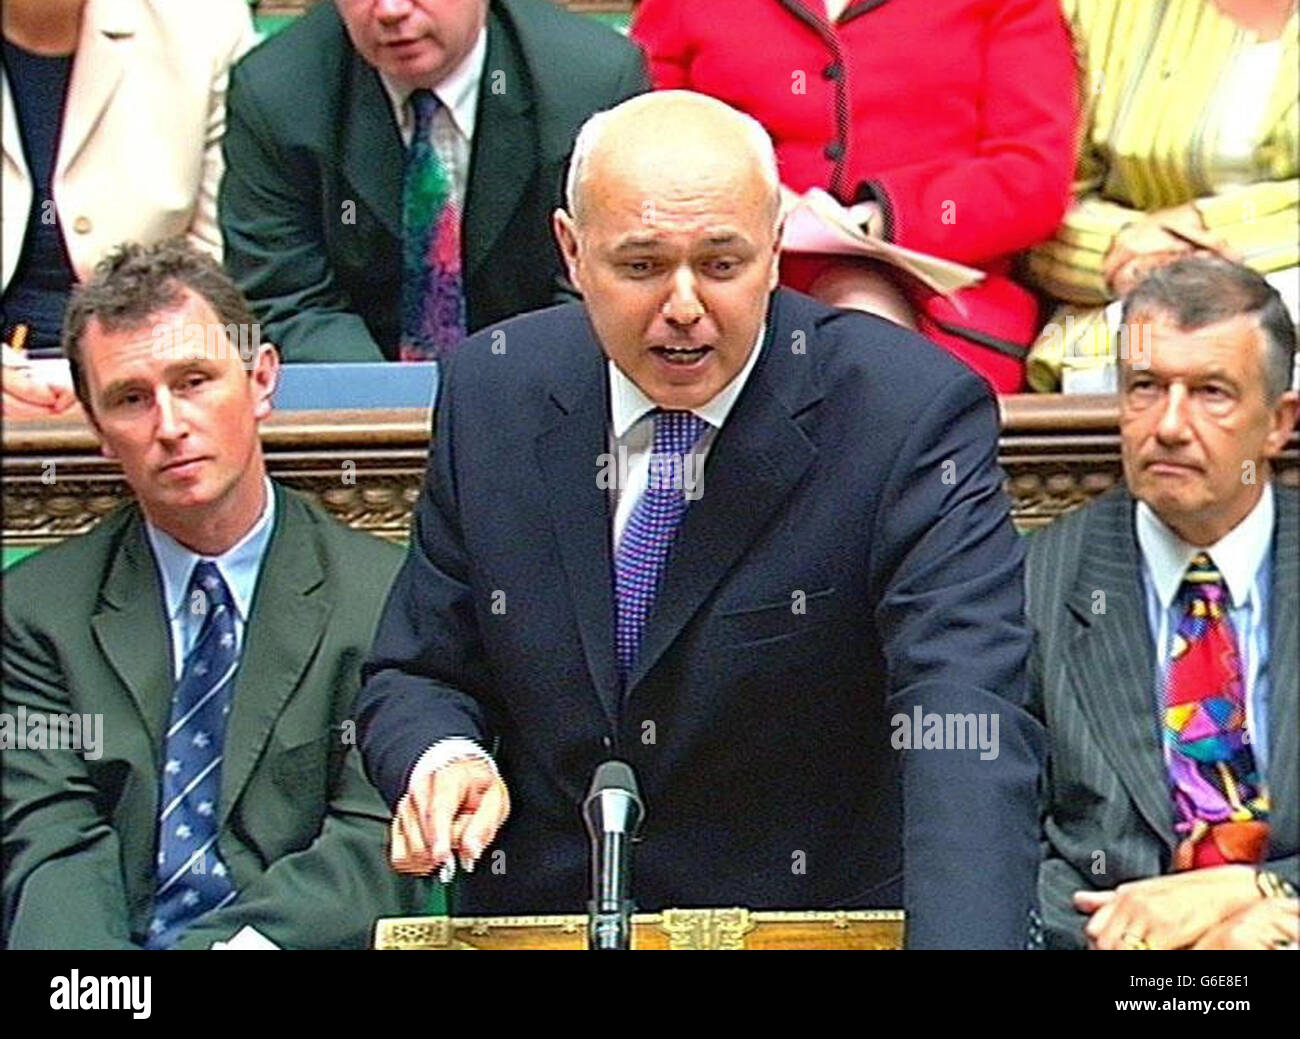 Capture d'écran du chef de l'opposition, Iain Duncan Smith, prenant la parole à la Chambre des communes, à Londres, au cours des questions du premier ministre. Banque D'Images